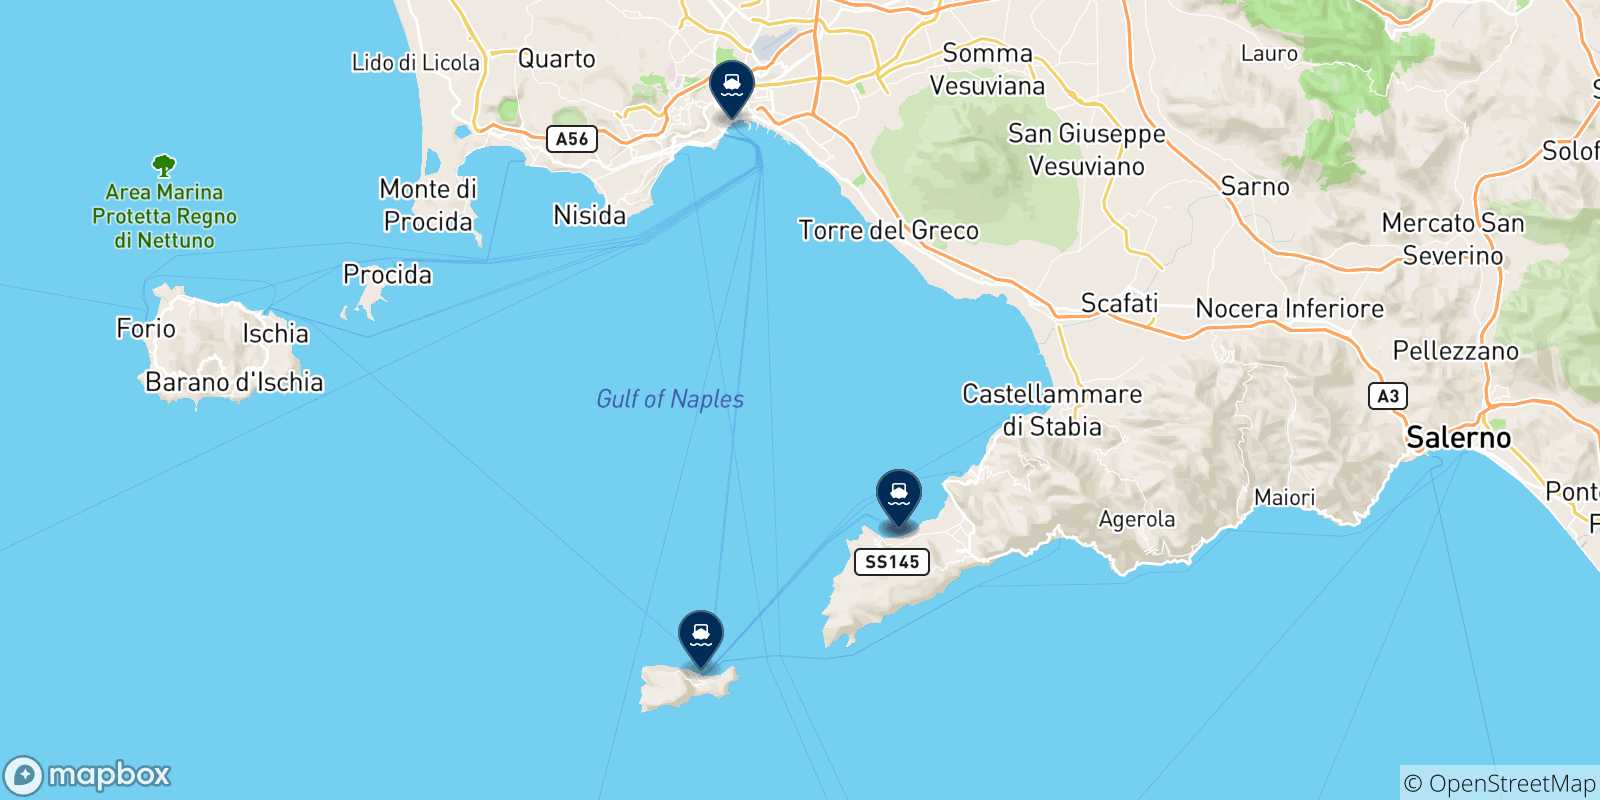 Mappa delle possibili rotte tra Castellammare e l'Italia